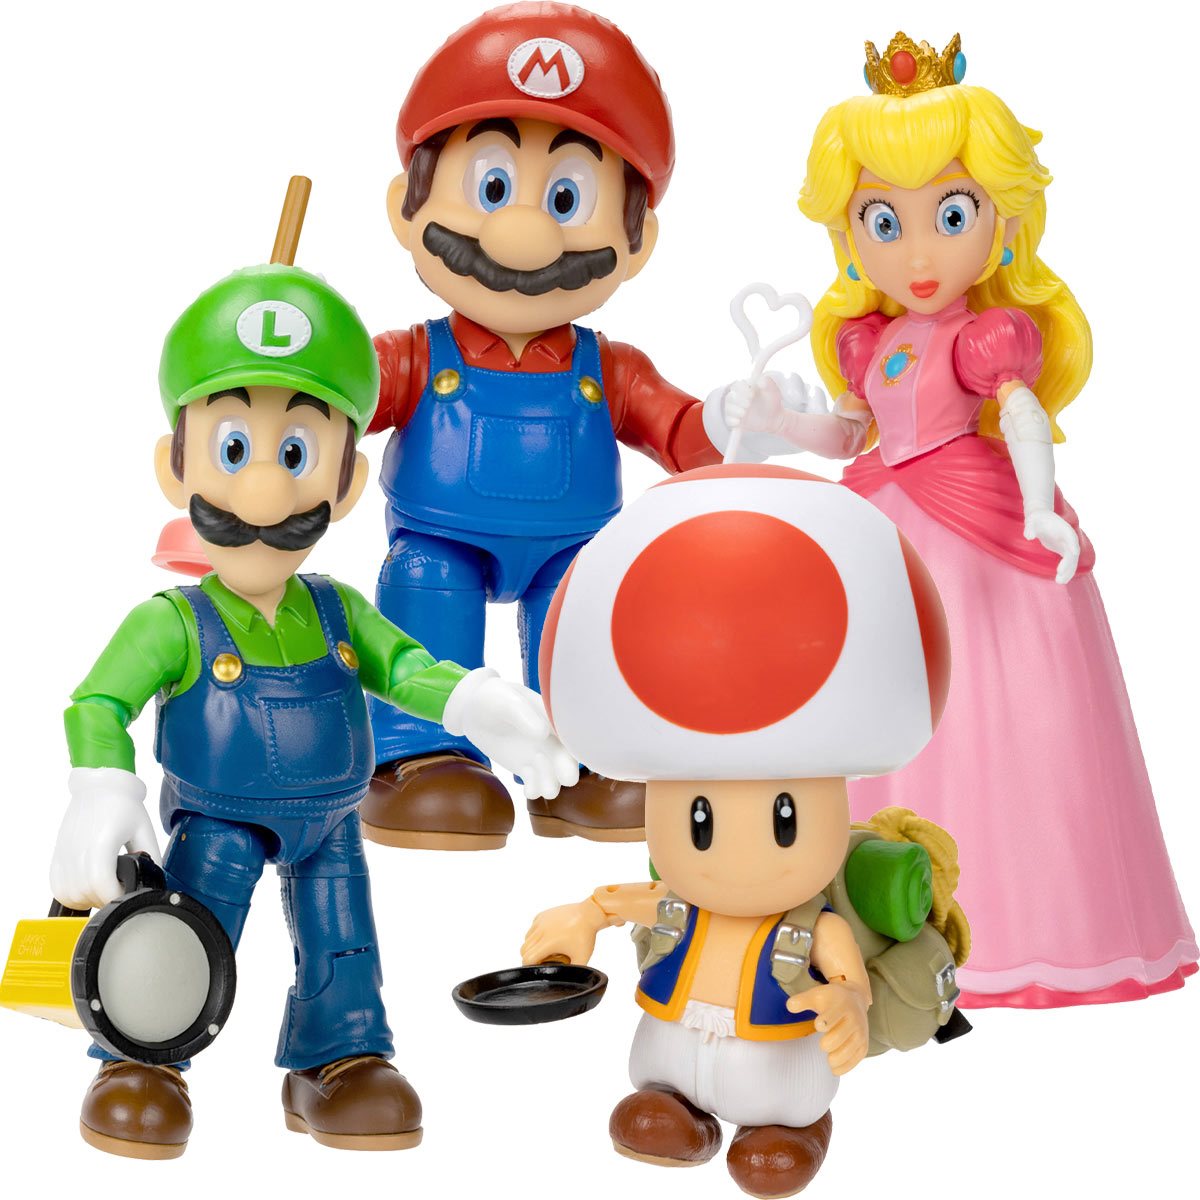  SUPER MARIO Nintendo Figures, Pack of 5, Peach